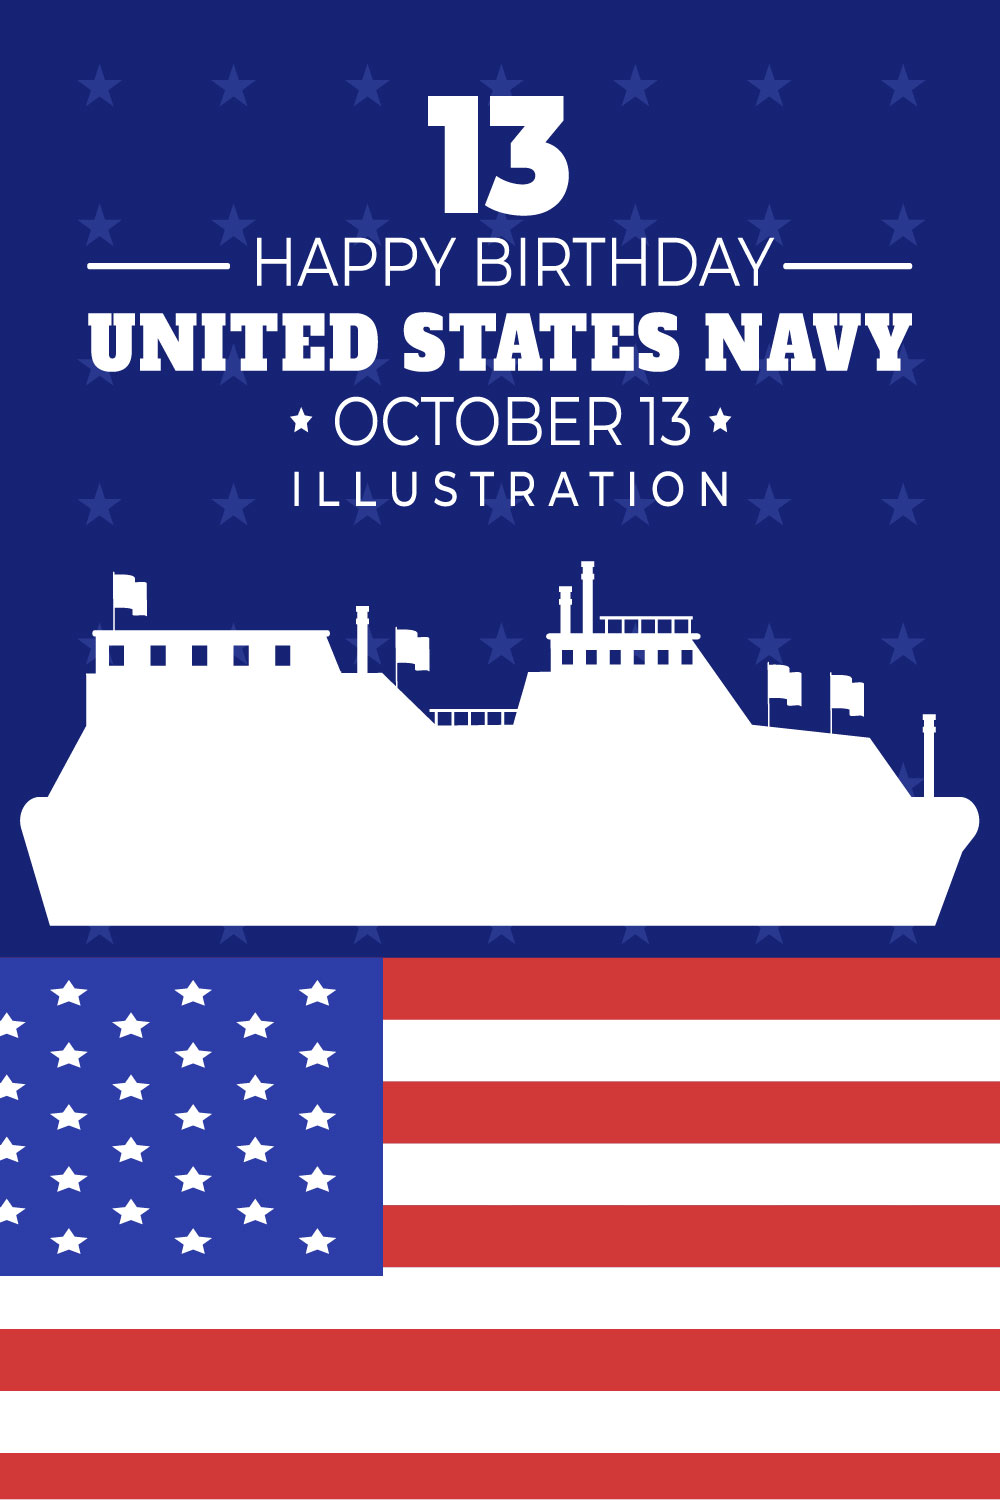 13 U.S. Navy Birthday Illustration Pinterest Image.